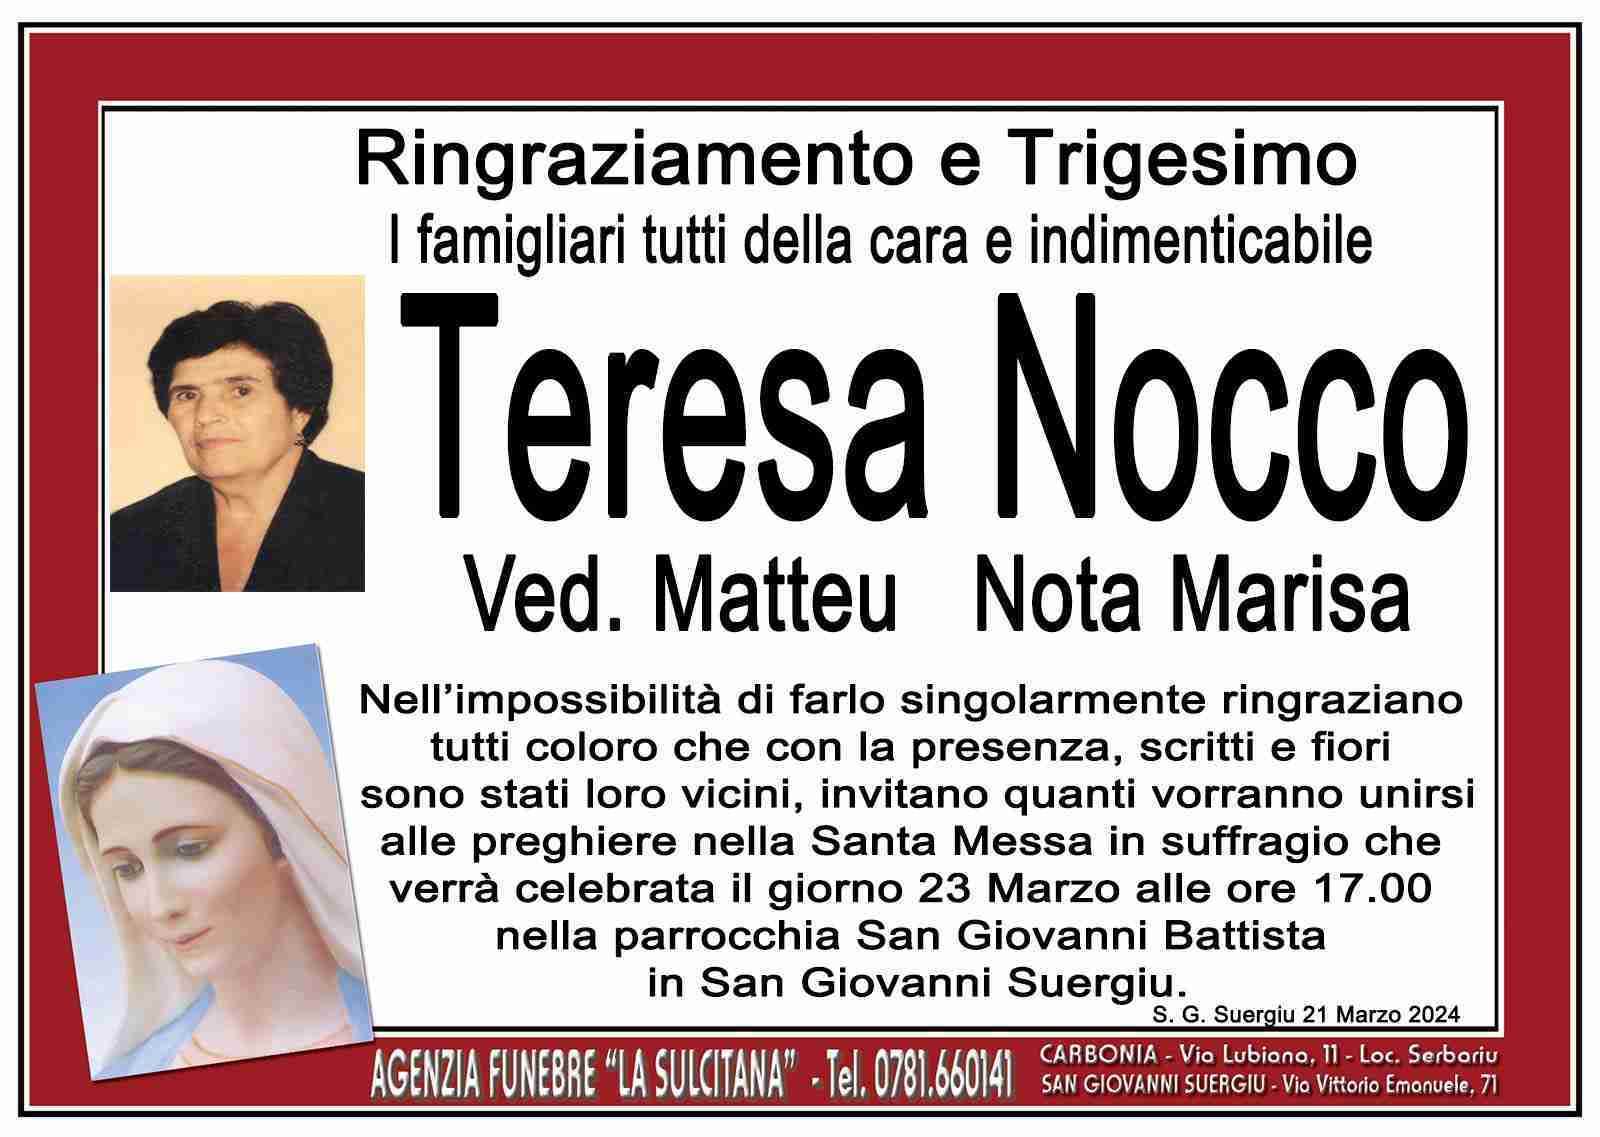 Teresa Nocco